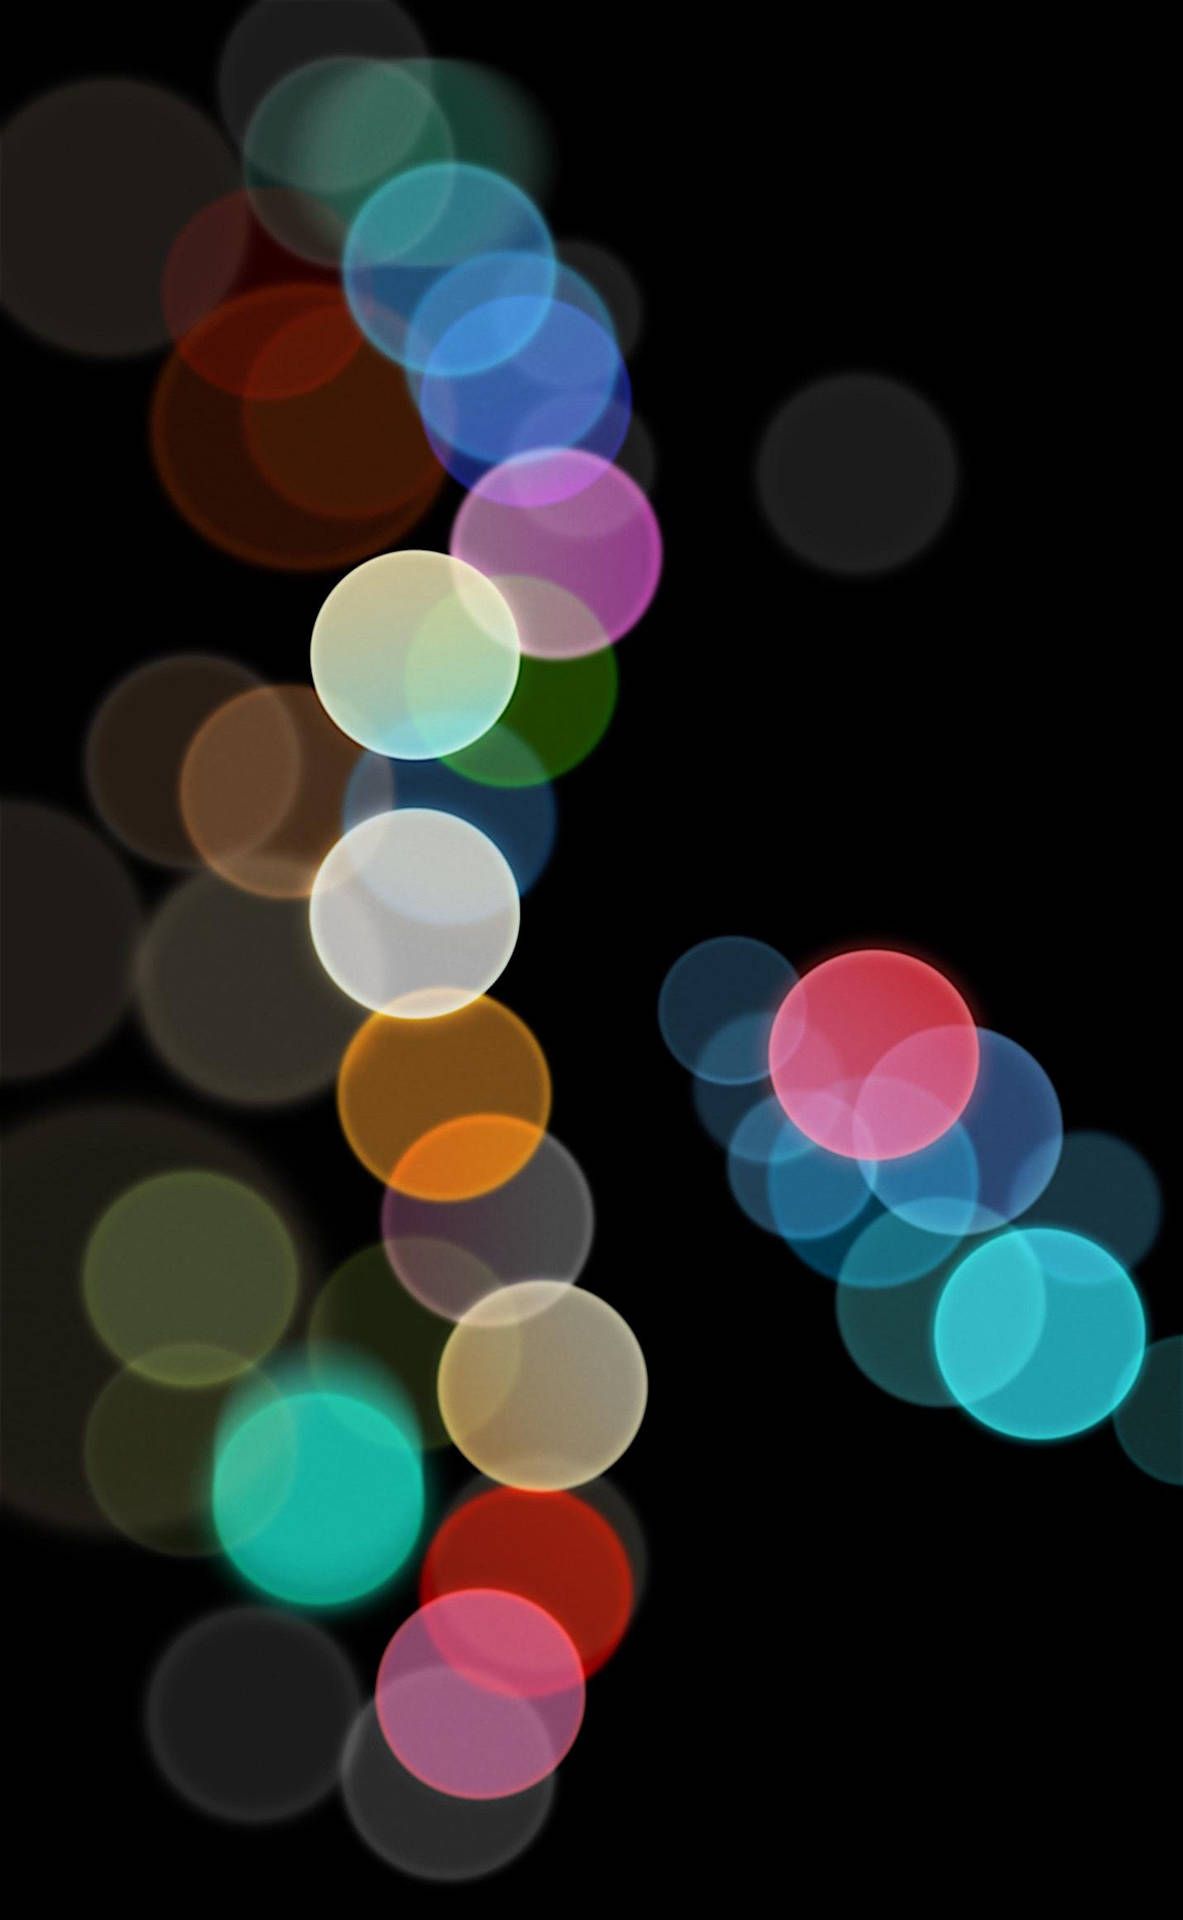  IPhone 7 Schwarz Hintergrundbild 1183x1920. Download Abstract Bokeh Lights Original iPhone 7 Wallpaper